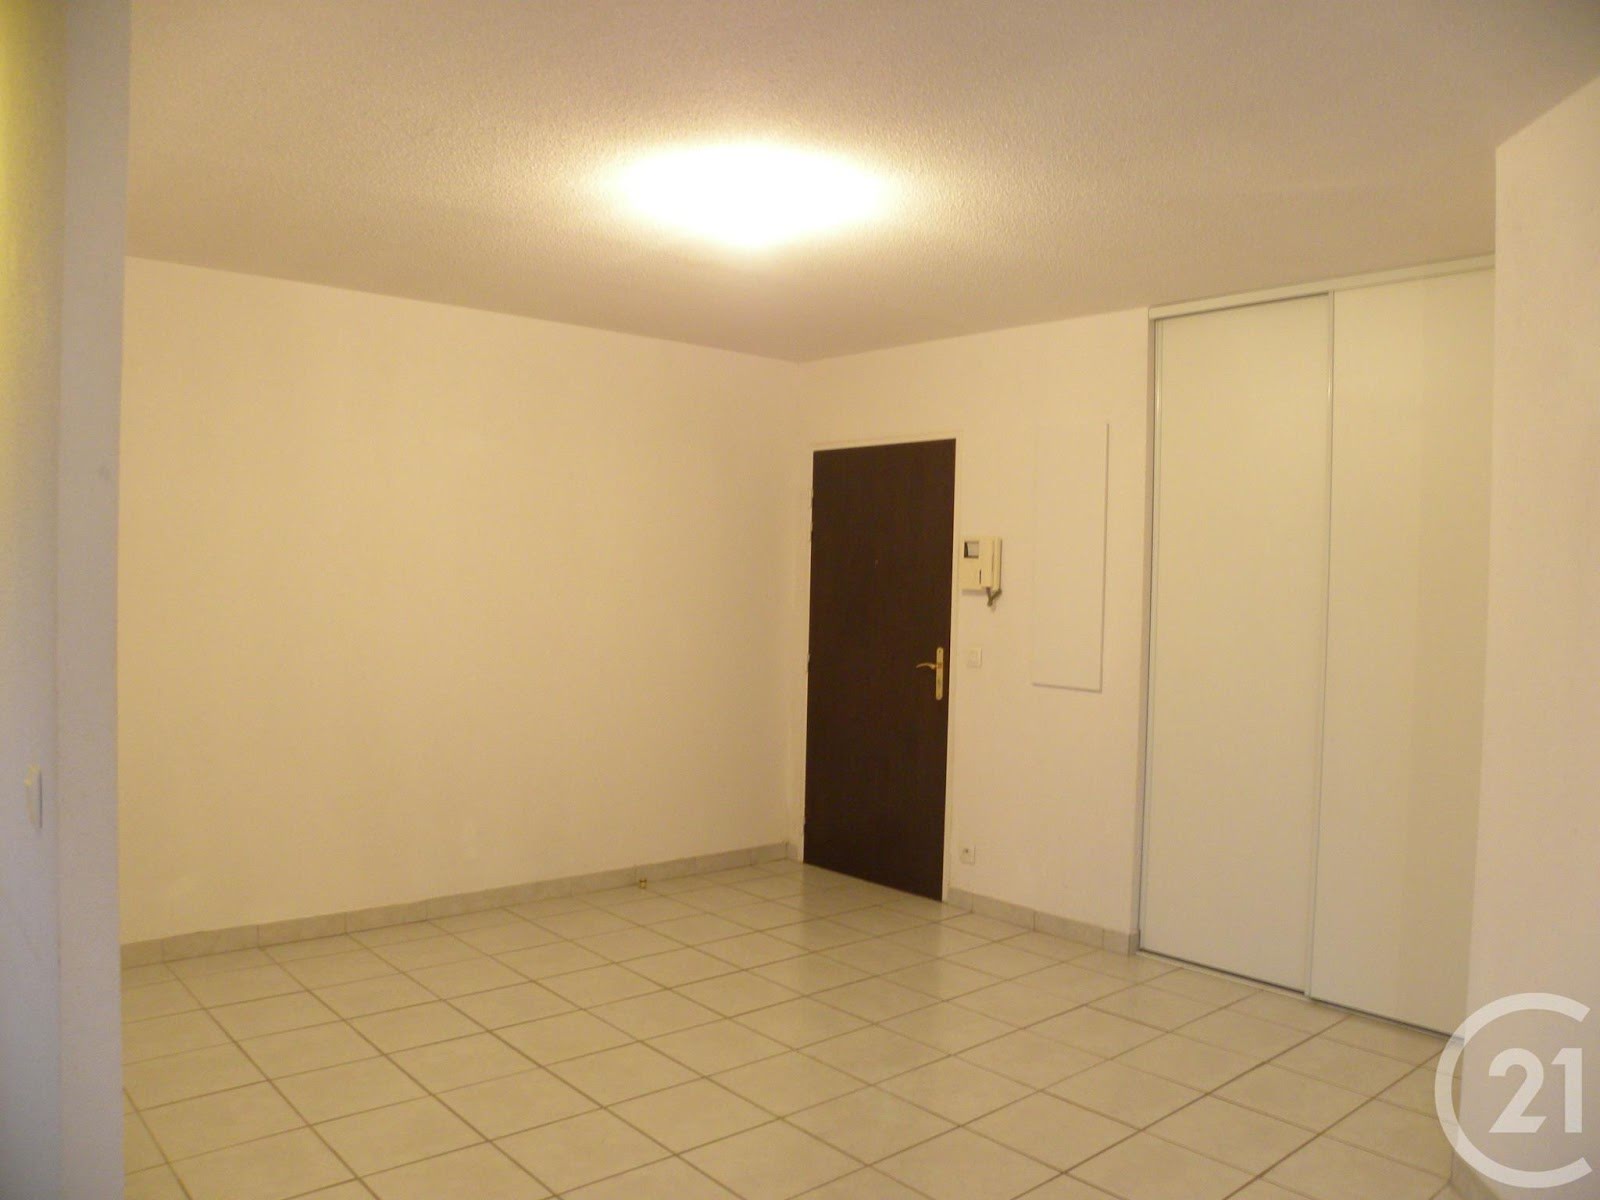 Location appartement 3 pièces 68,33 m2